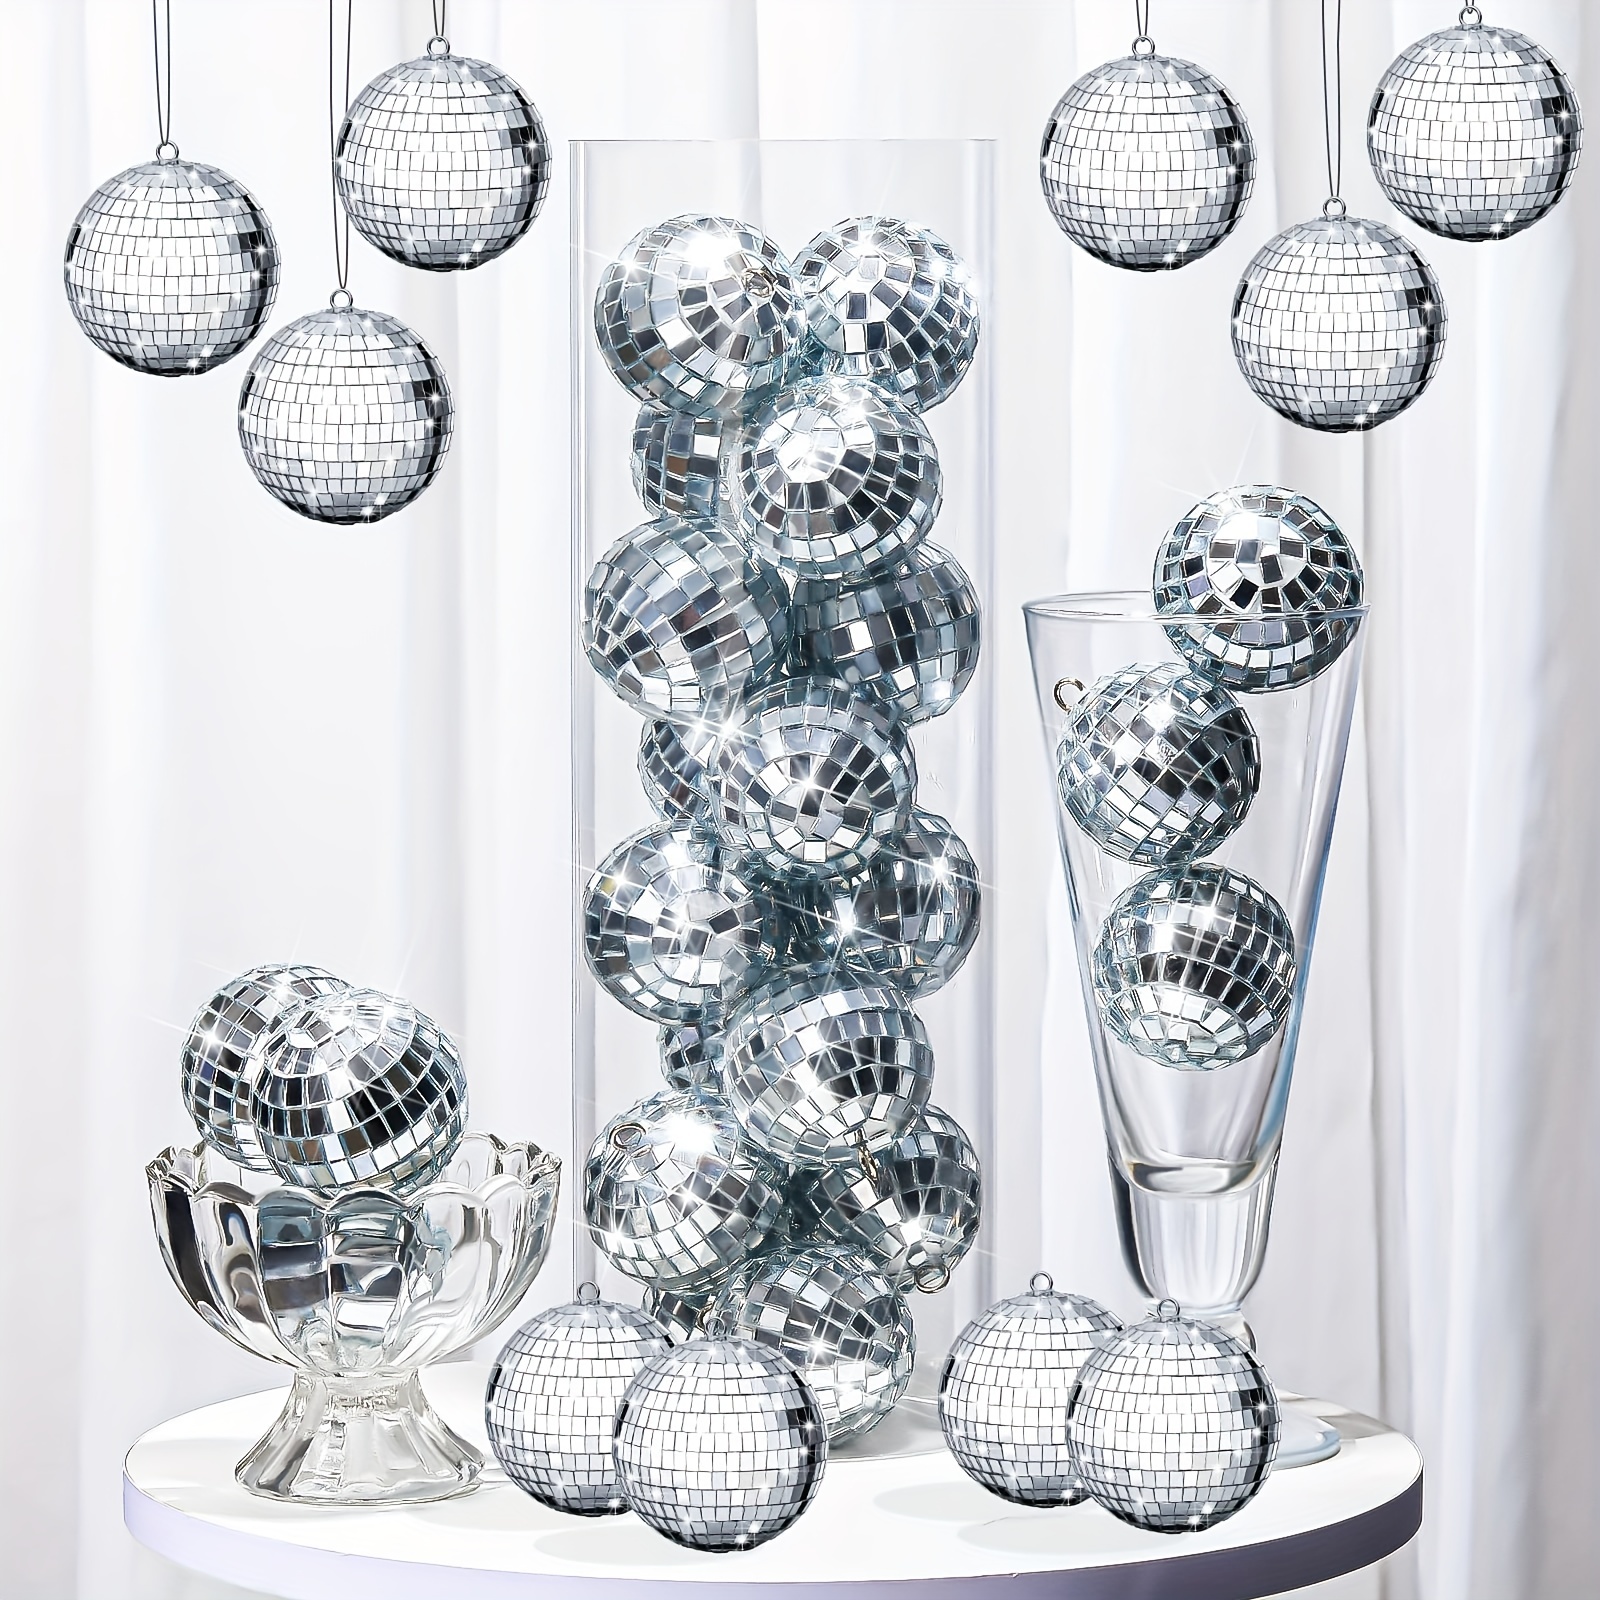 Sumind 50 Pcs Disco Balls Ornaments Mini Disco Balls Silver